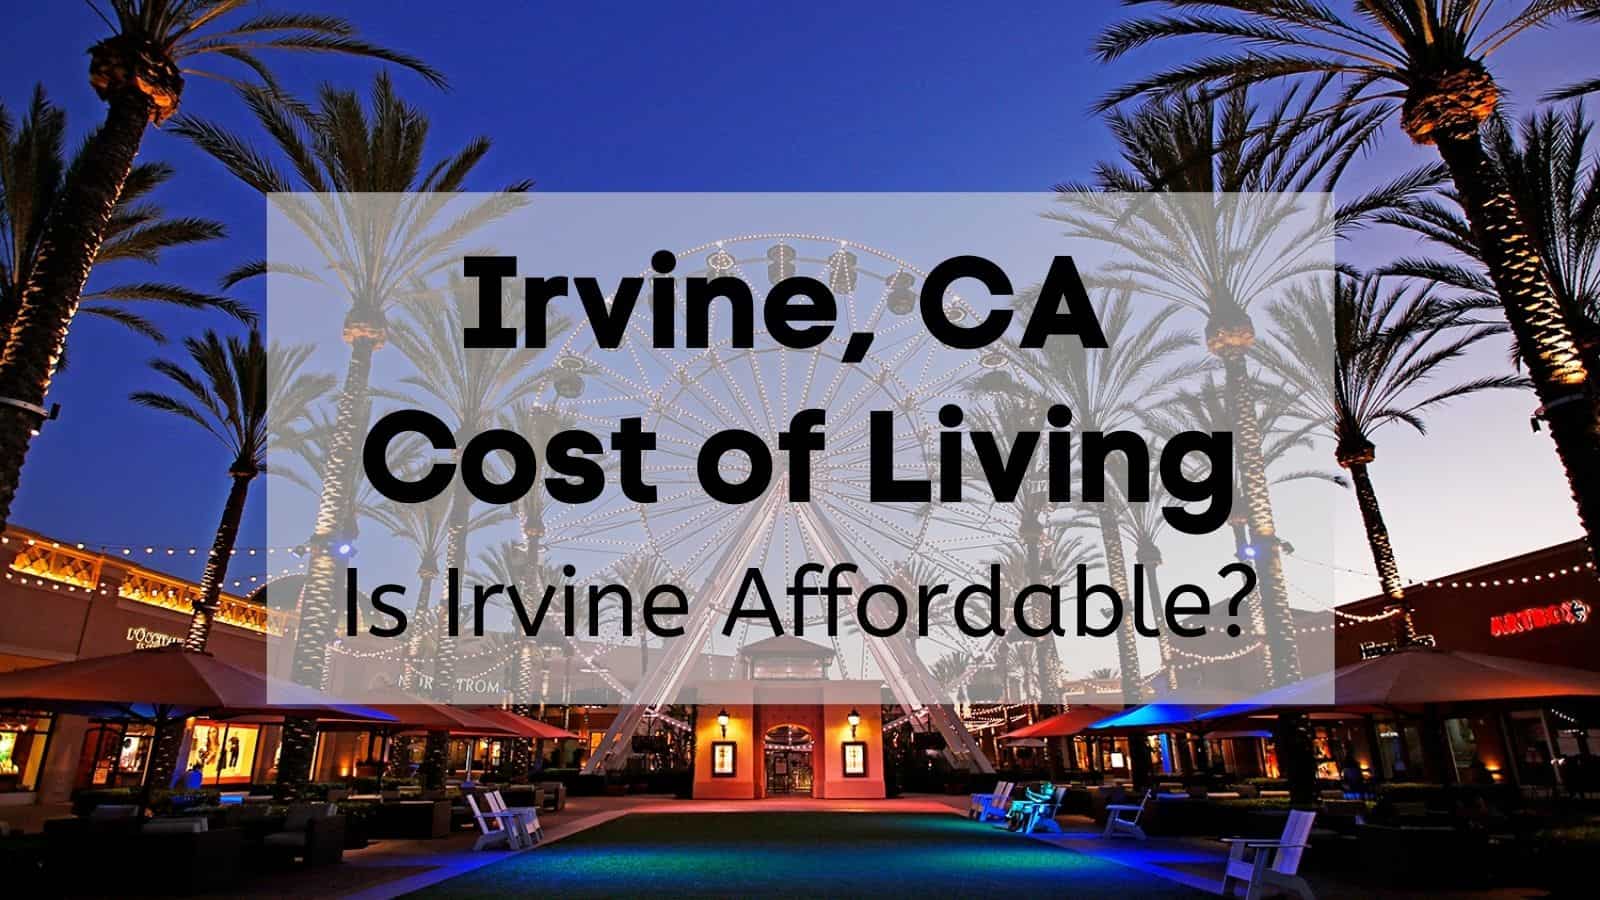 Irvine Ca Airbnb